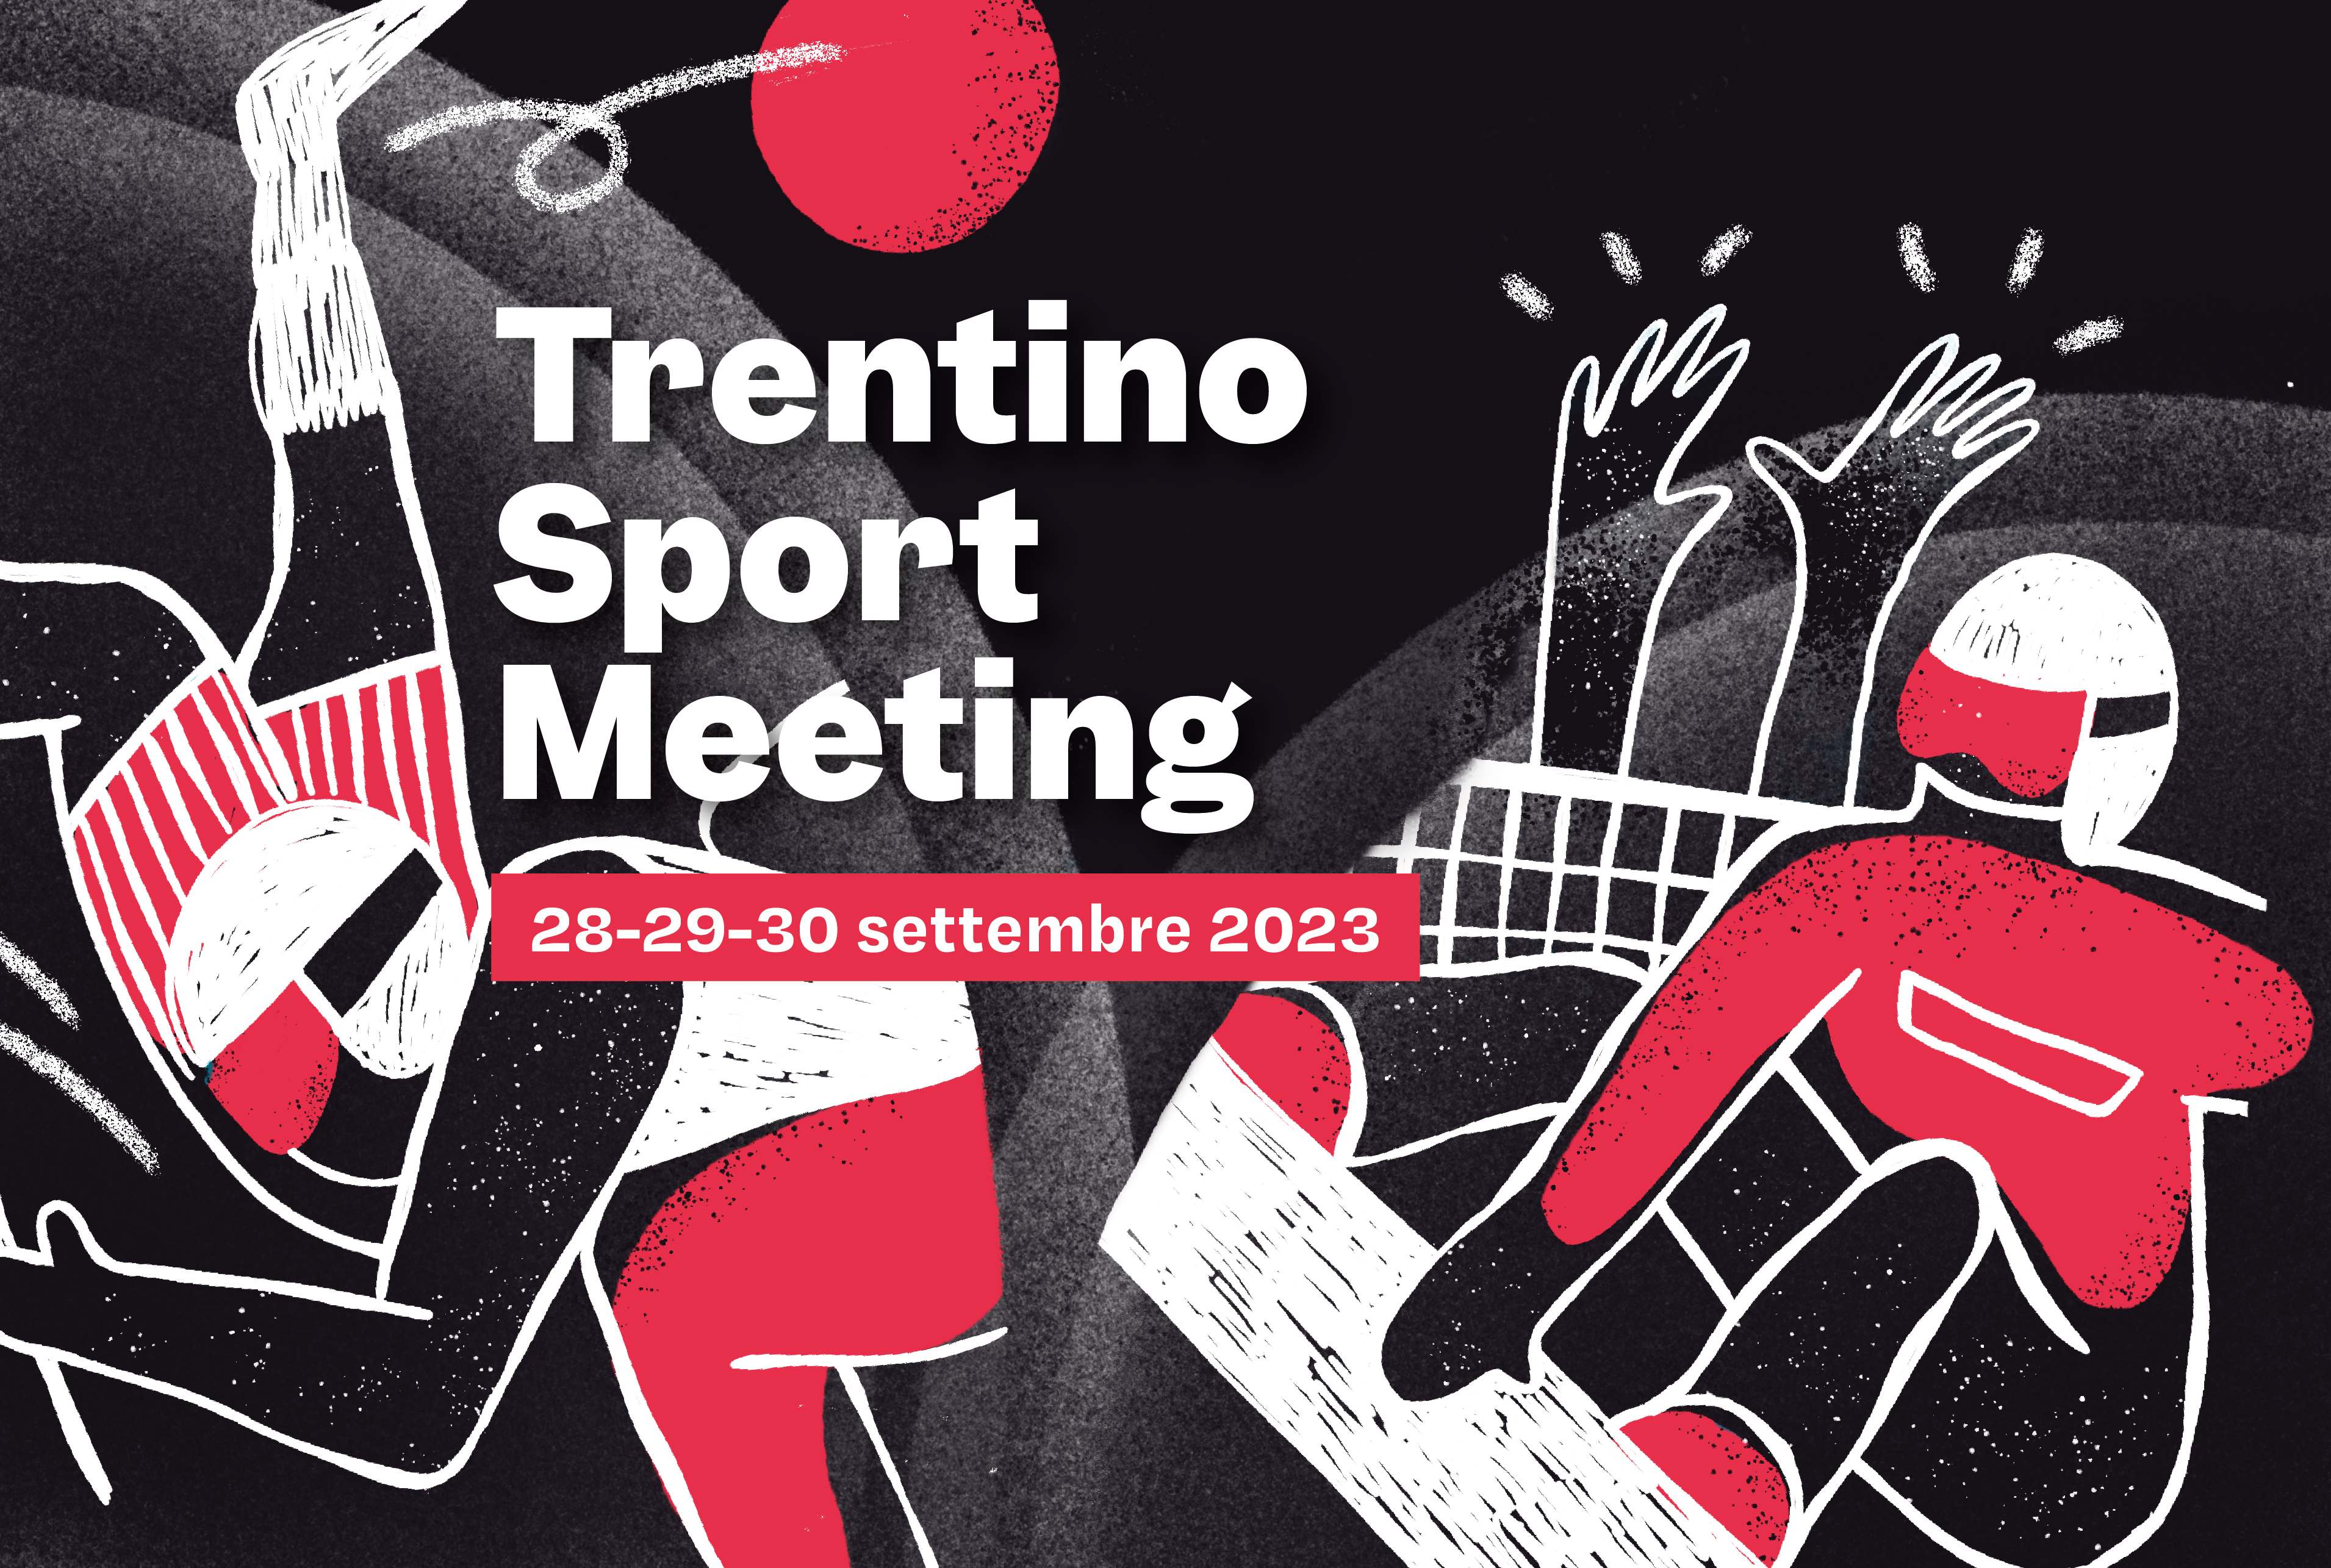 Trentino Sport Meeting